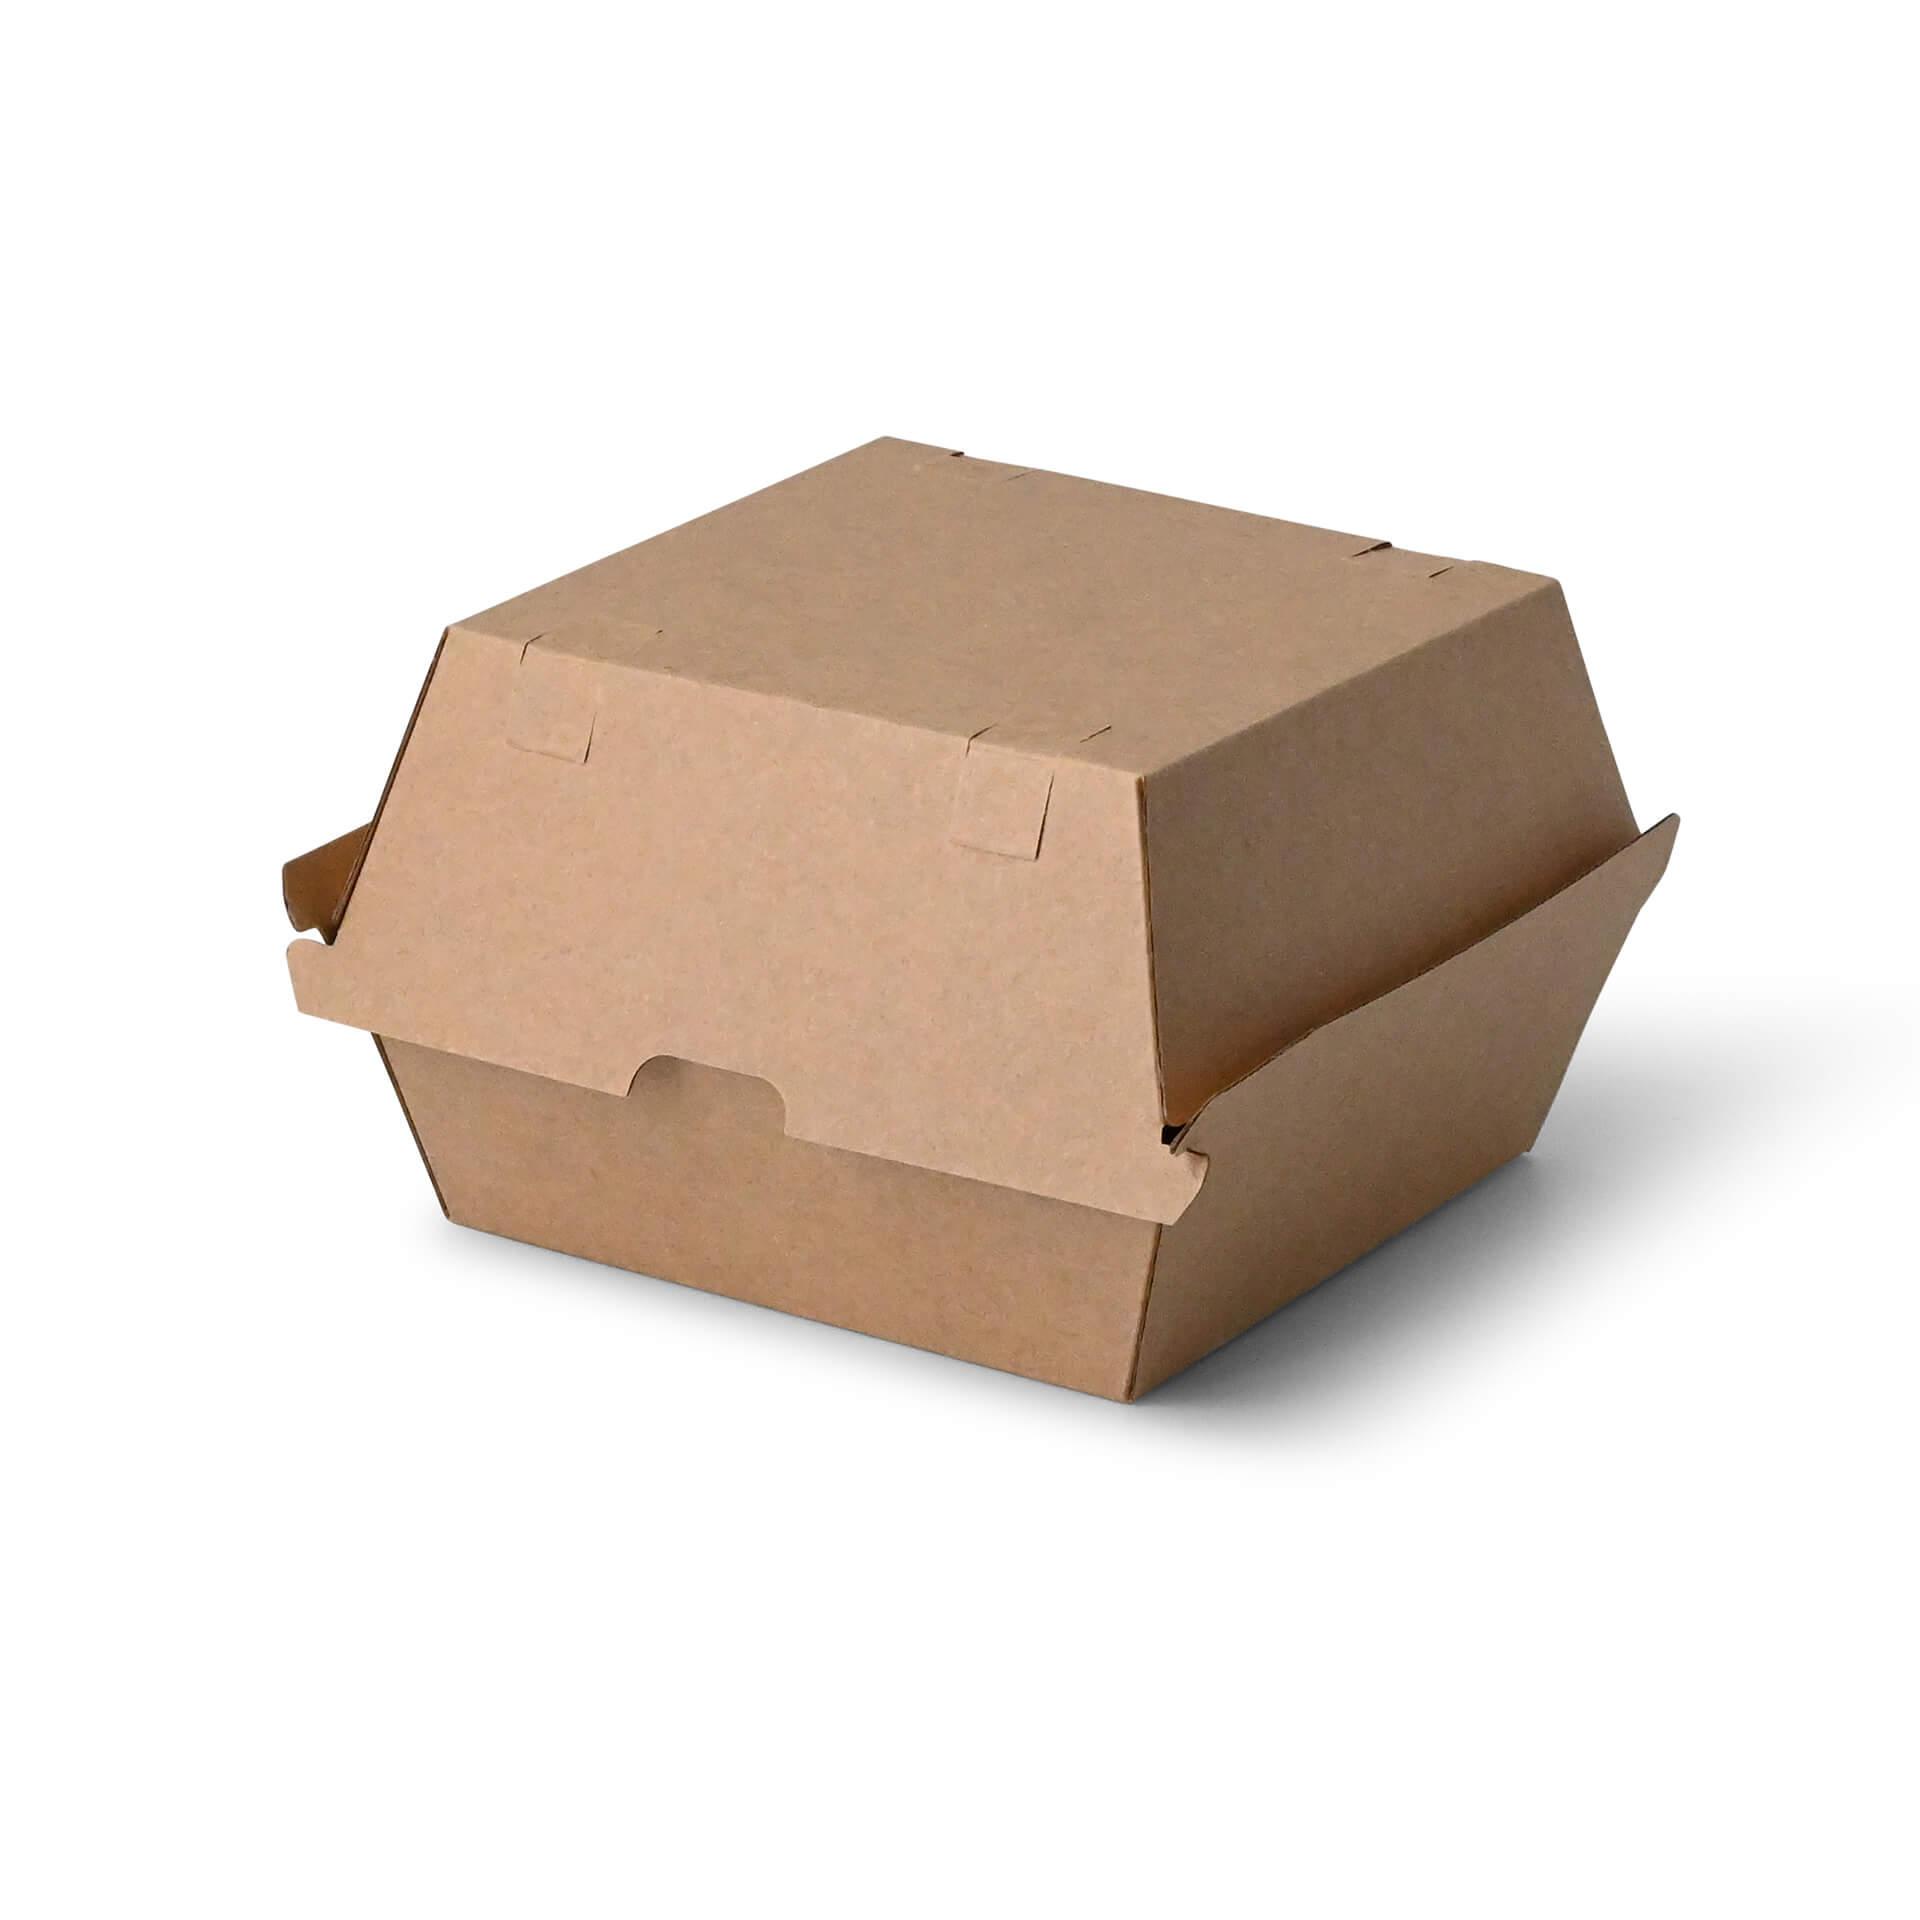 Take-away-Burger-Boxen 16,8 x 15,8 x 9,8 cm, Kraftkarton, braun